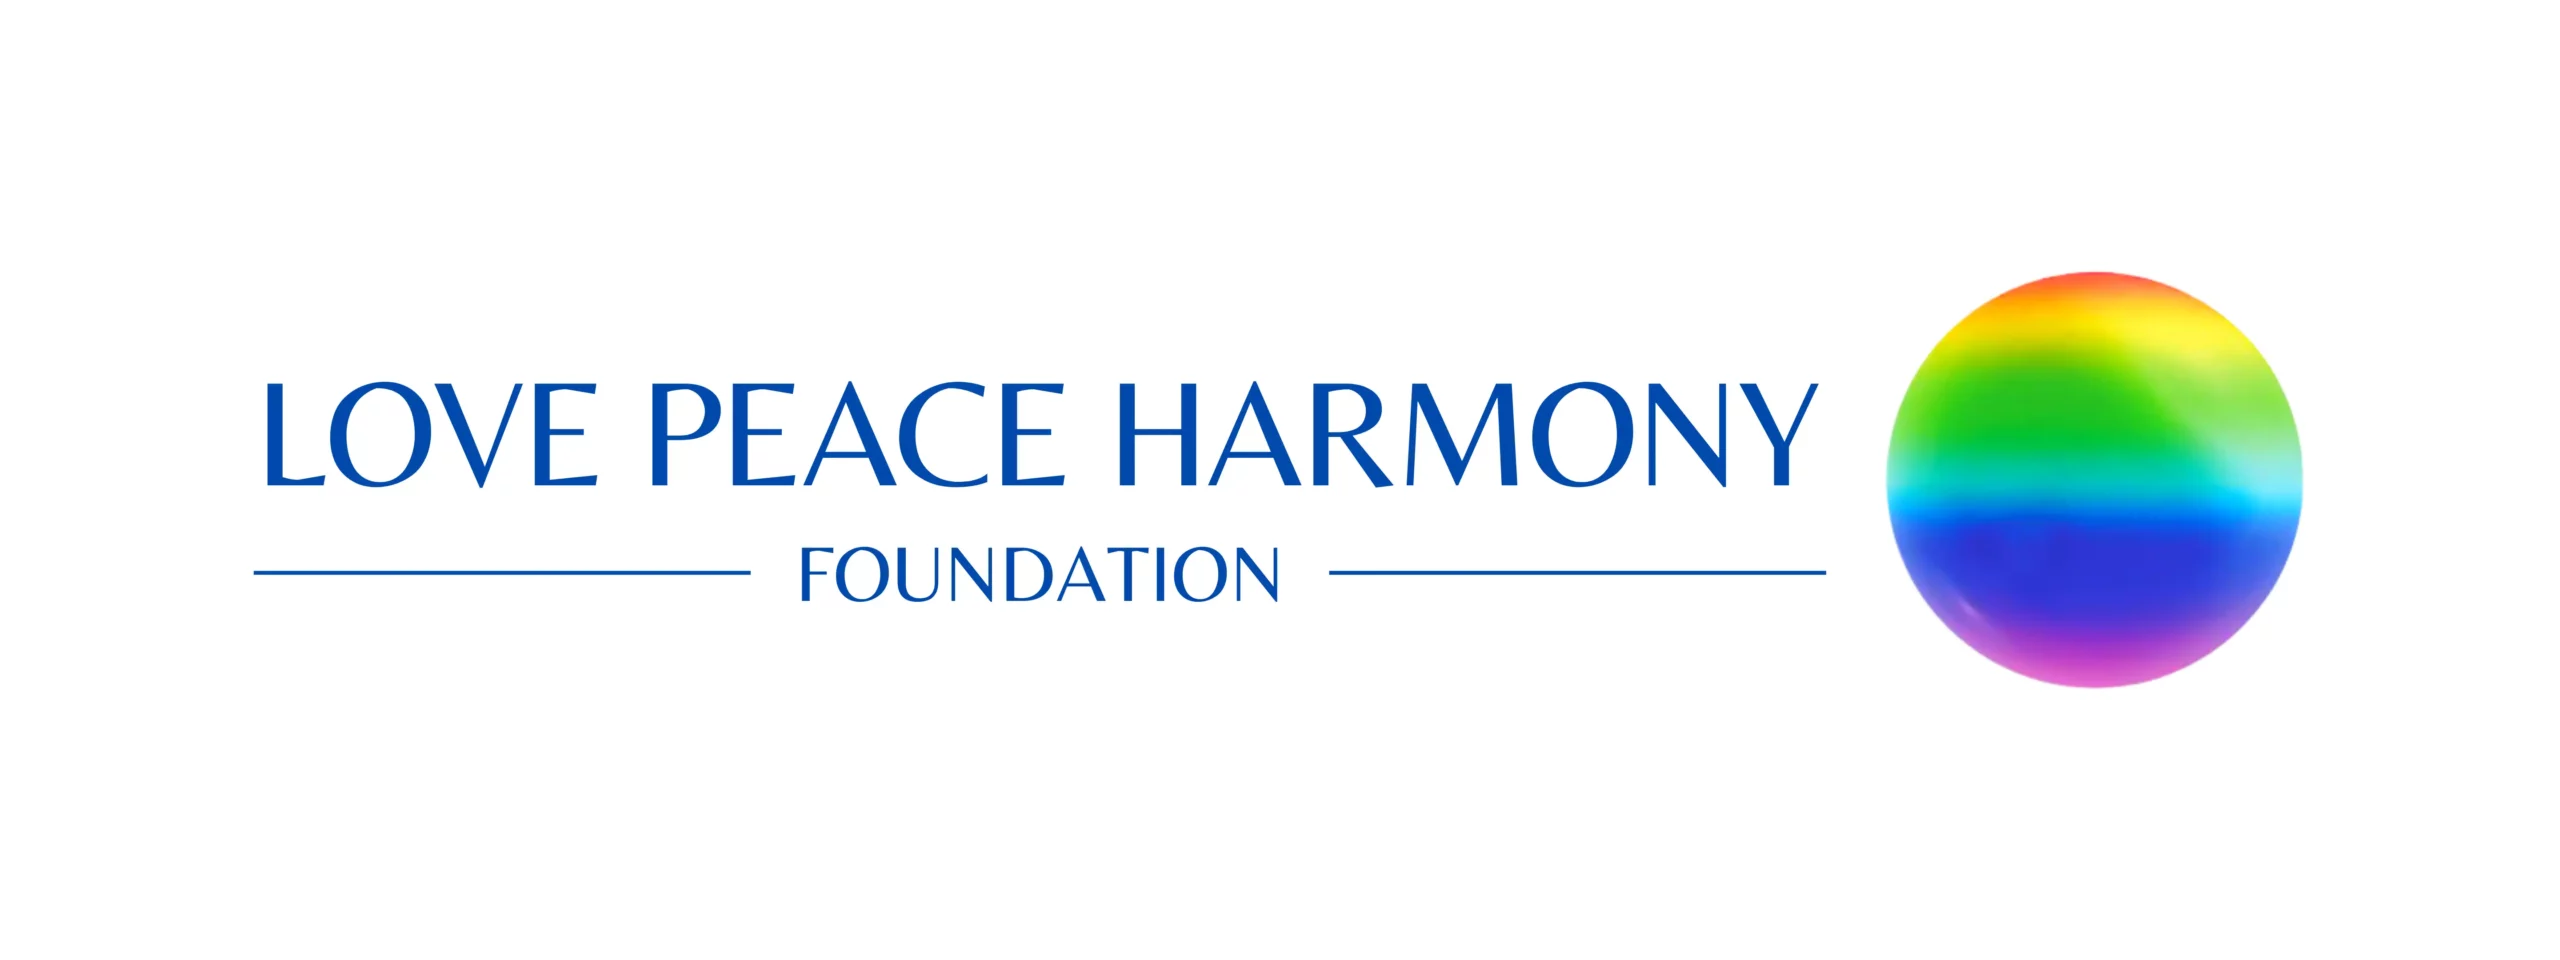 love-peace-harmony-foundation